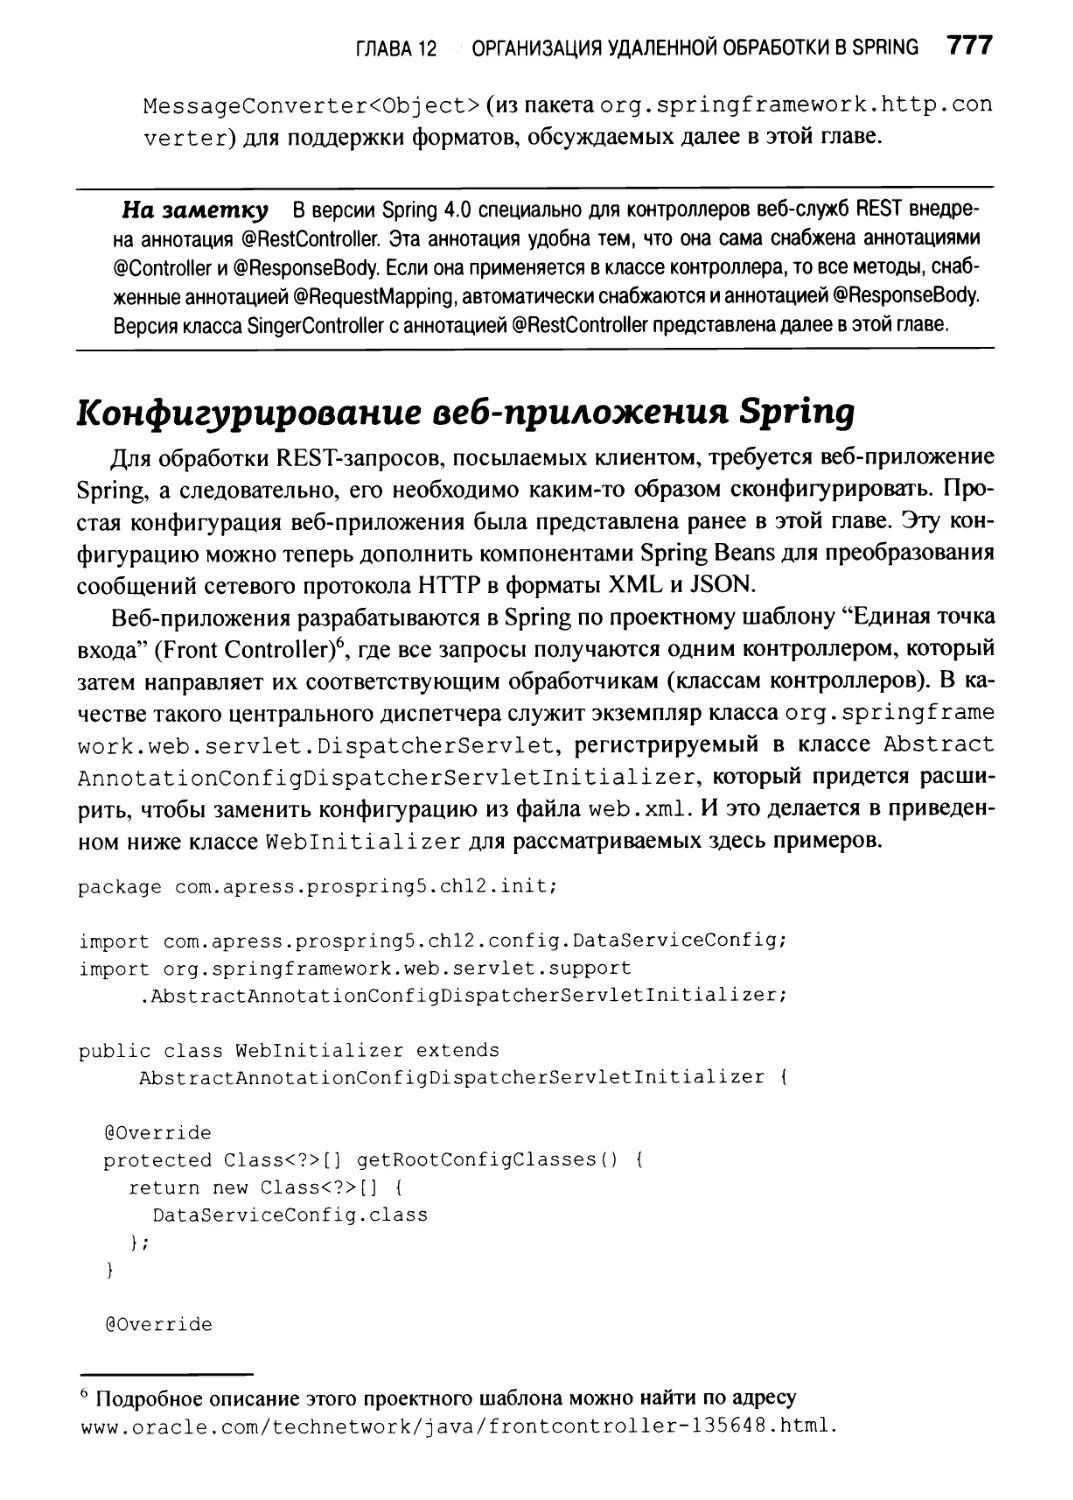 Конфигурирование веб-приложения Spring